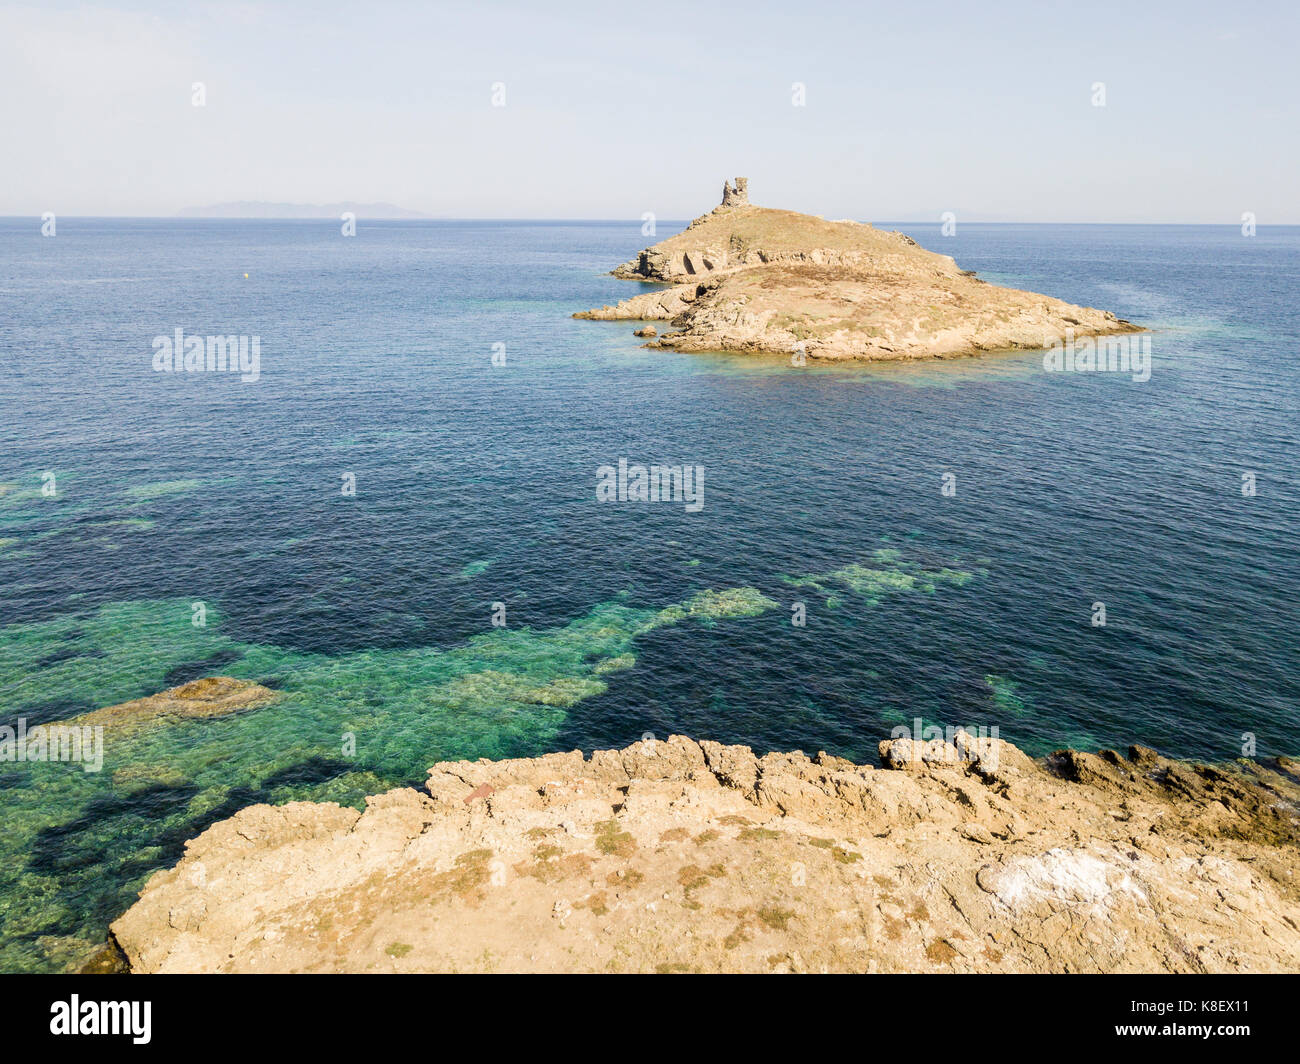 Luftaufnahme der Inseln Finocchiarola, Mezzana, Terra, Halbinsel von Cap Corse, Korsika. Tyrrhenische Meer, unbewohnte Inseln, die Teil des t Stockfoto